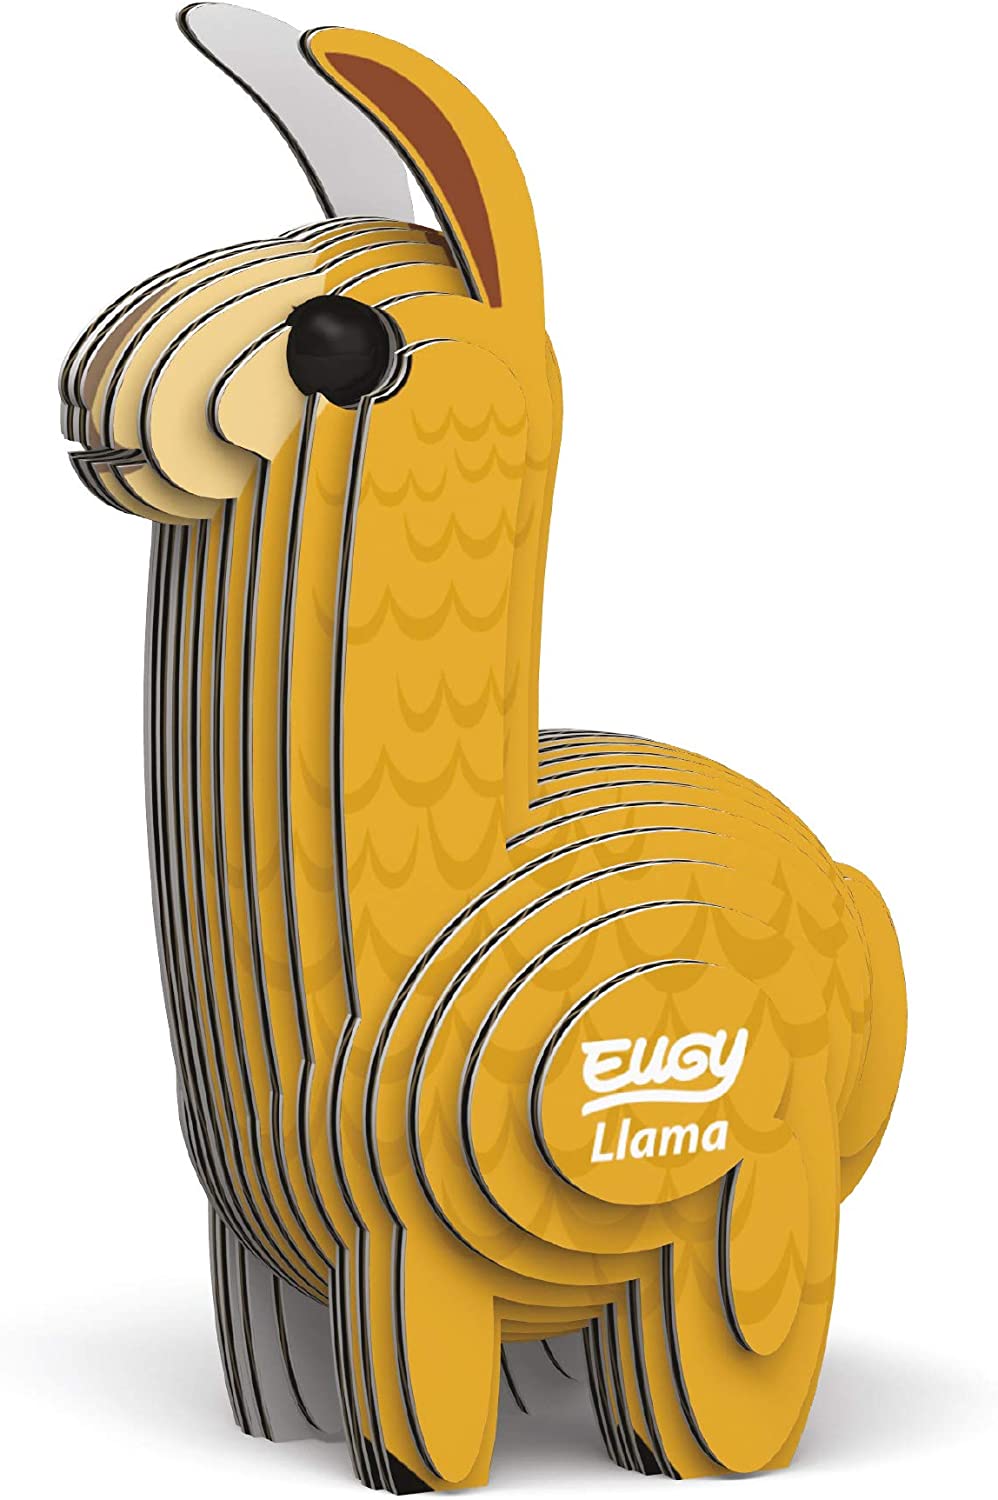 EUGY Llama 3D Puzzle